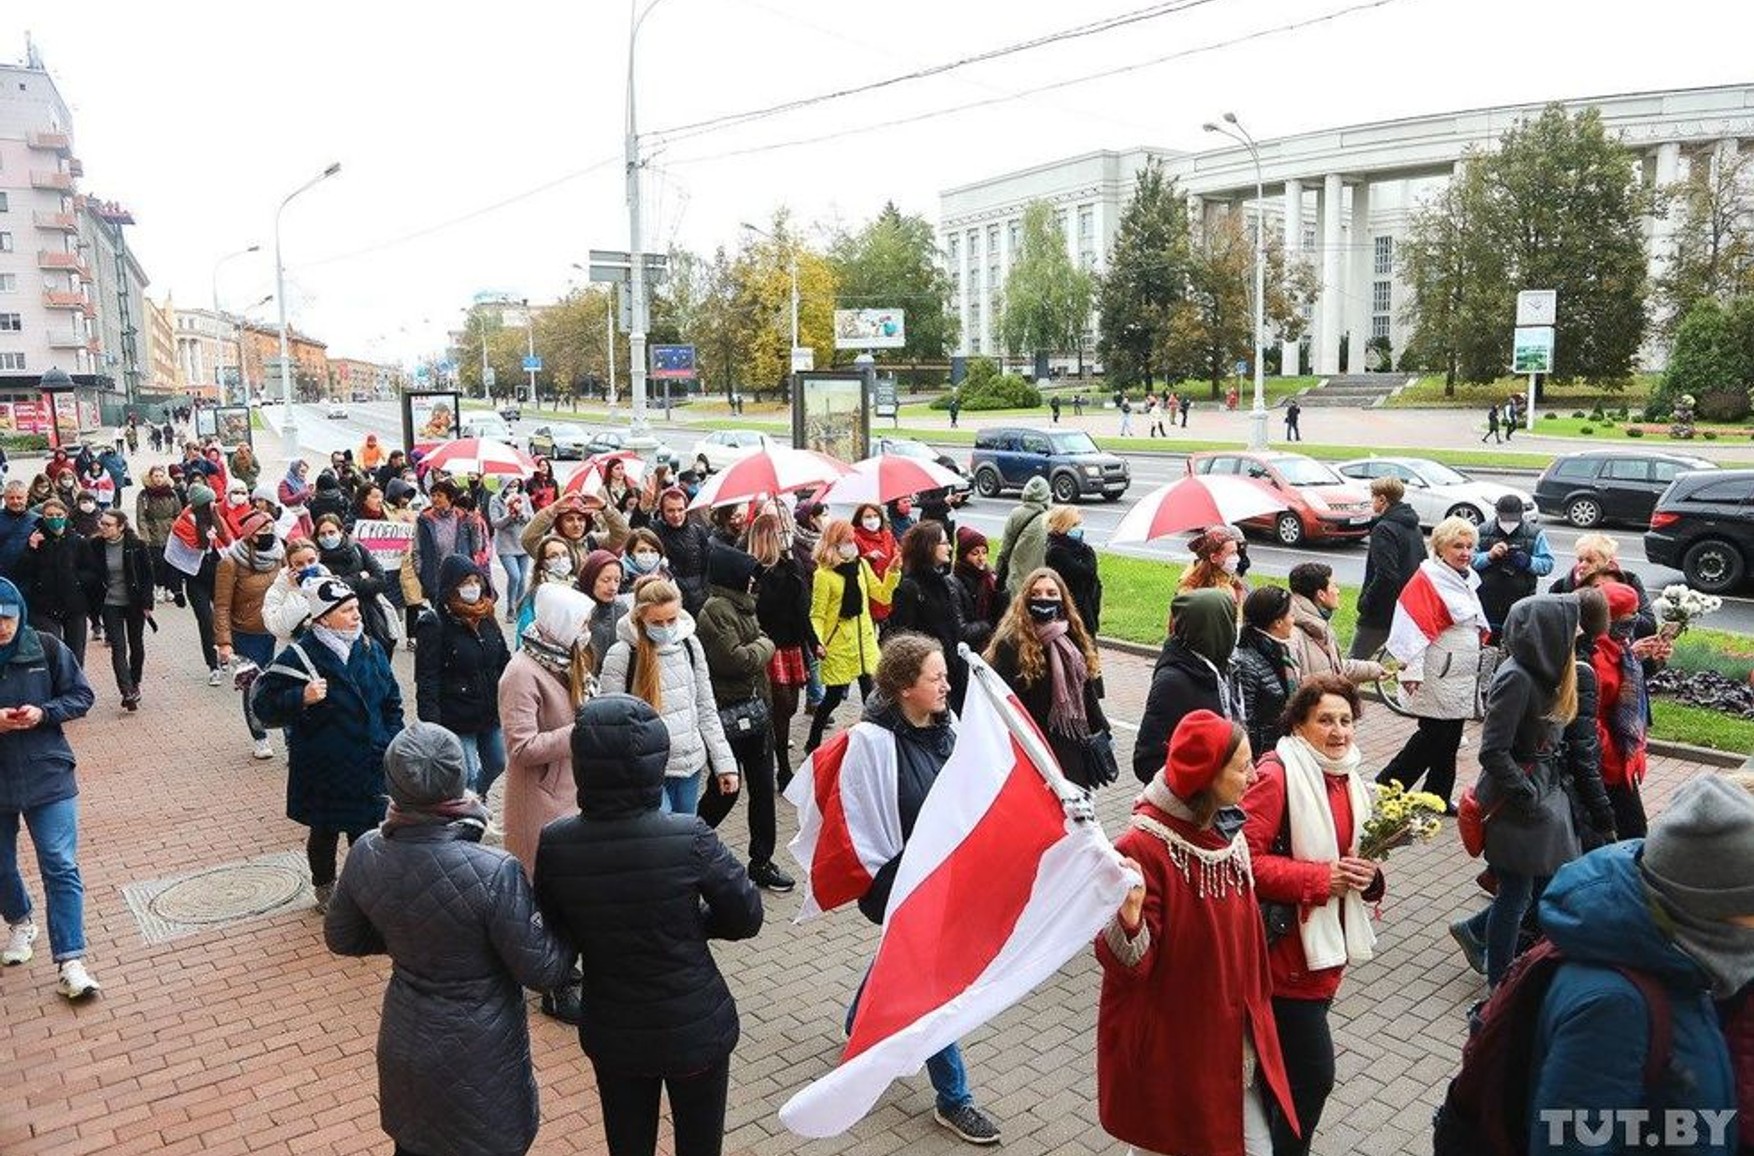 У Білорусі на протестних акціях було затримано 58 осіб - МВС